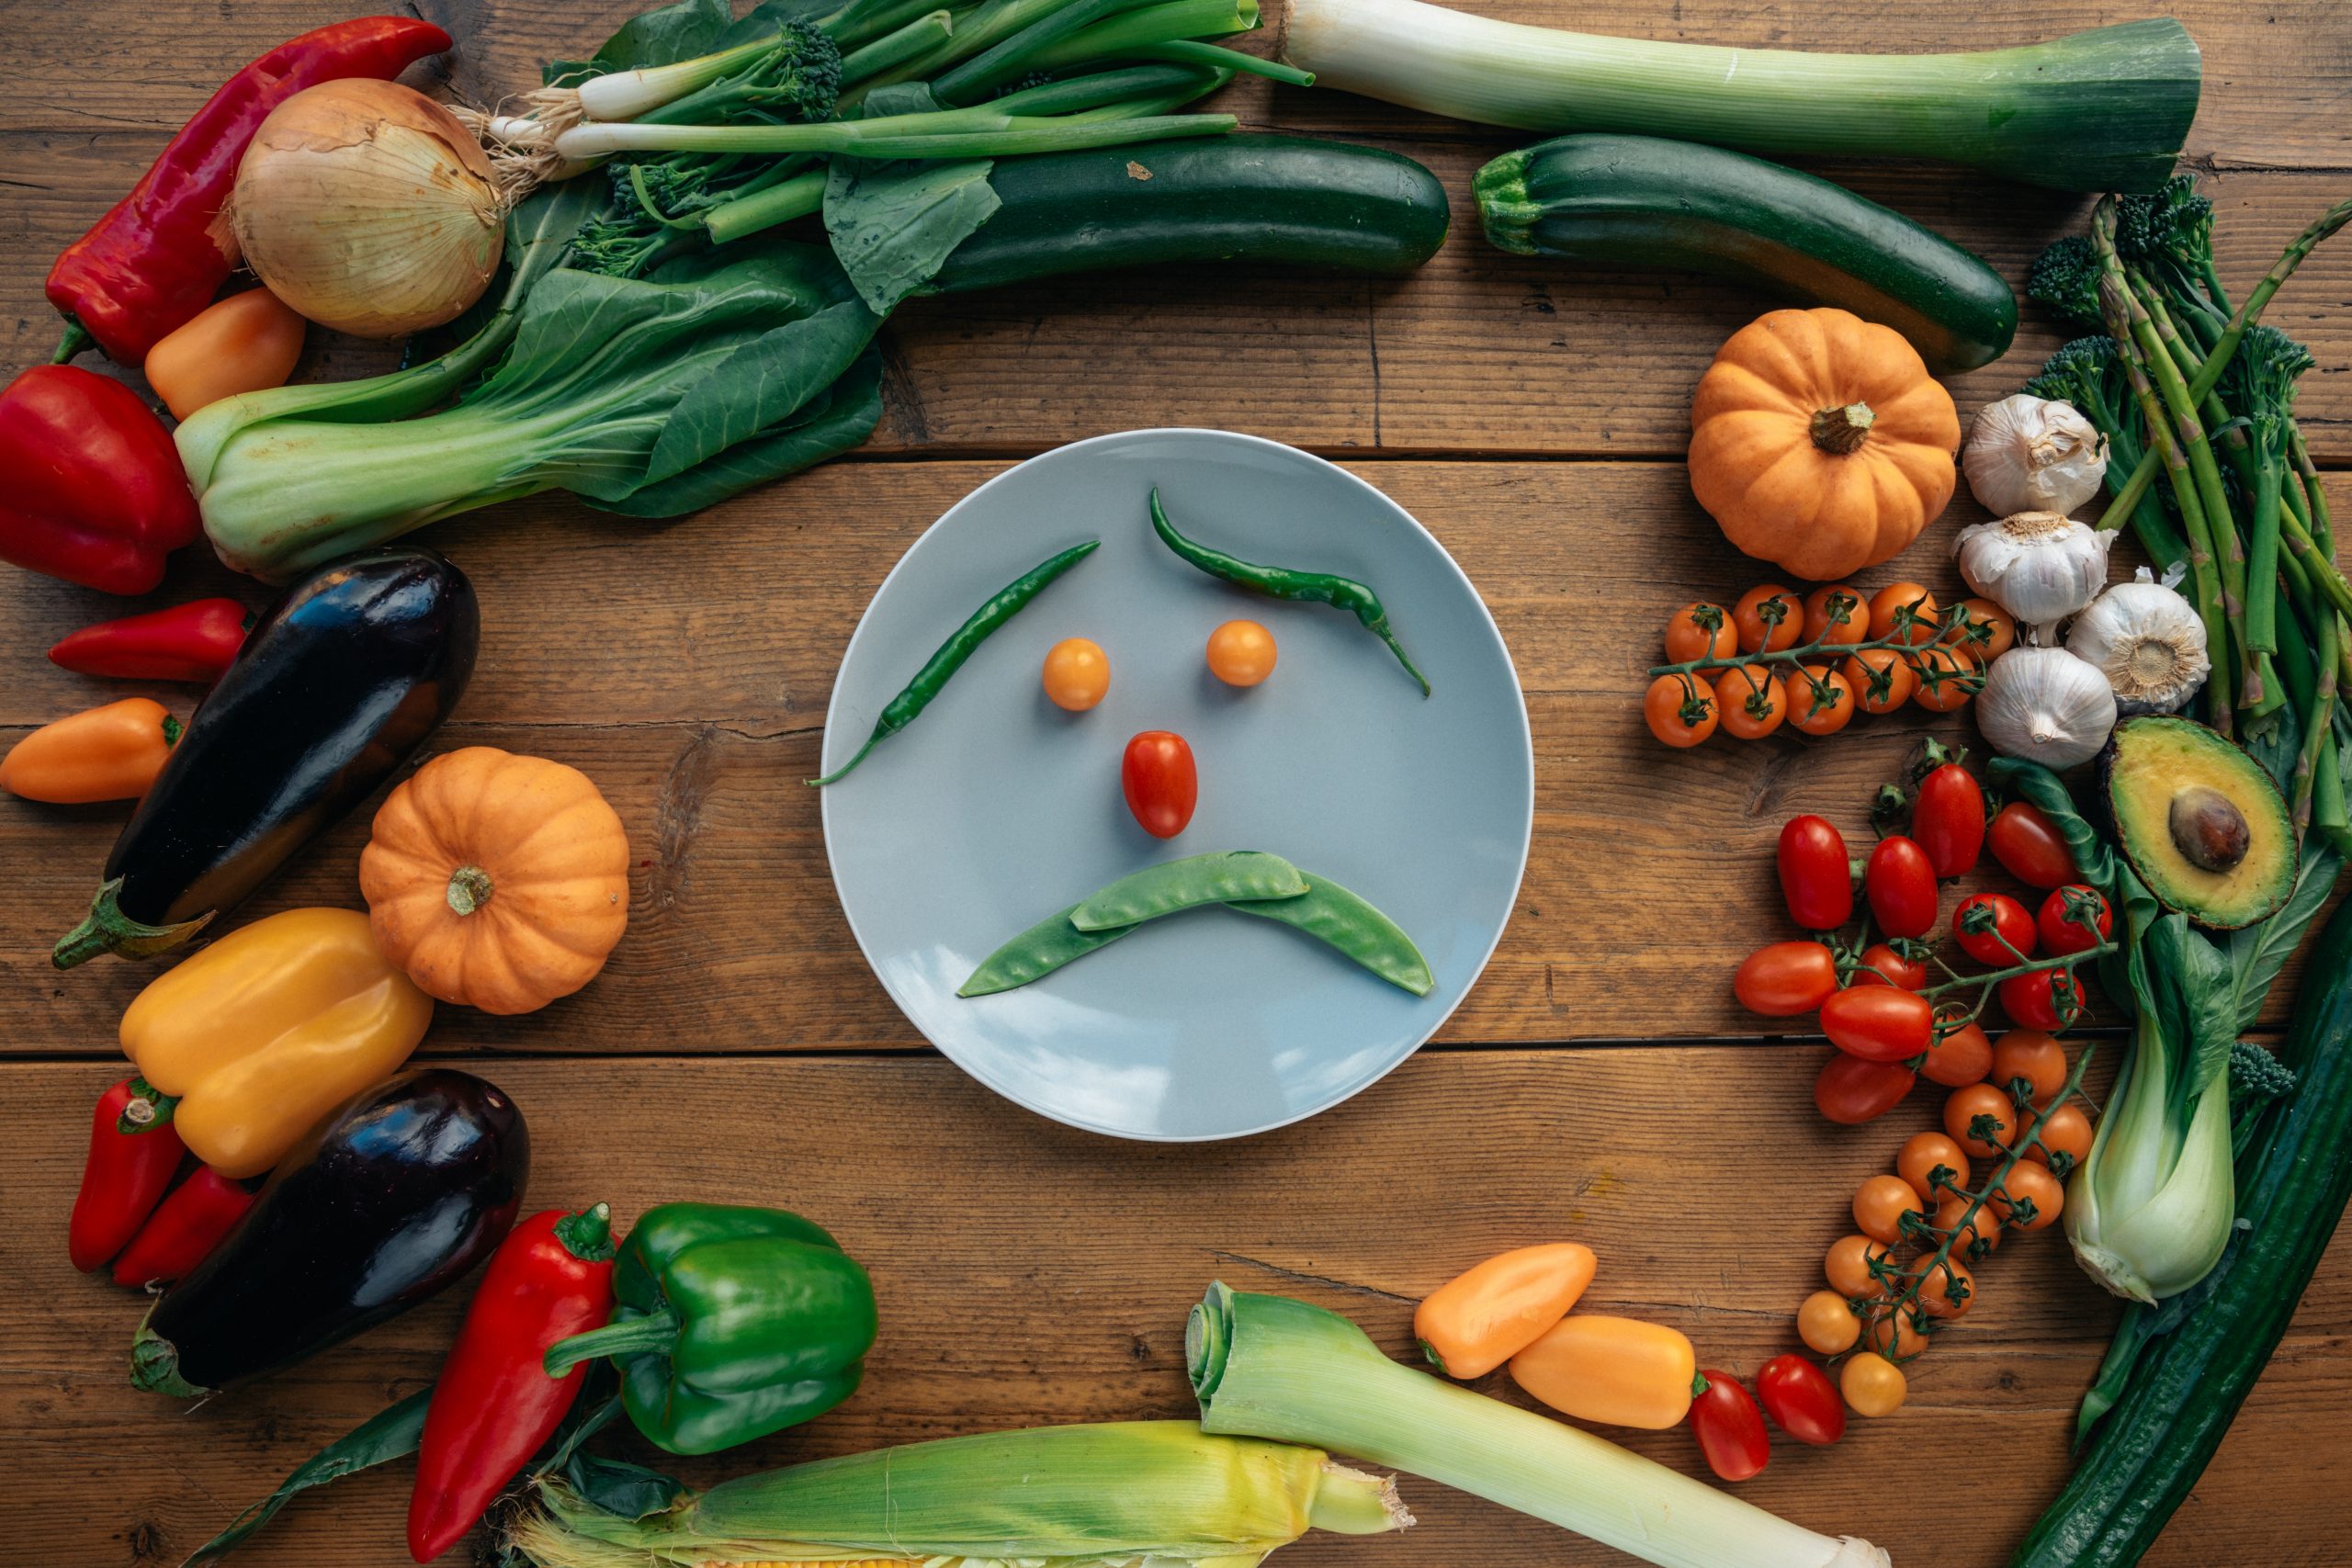 Une assiette avant des légumes positionnés en forme de tete triste, entourée de fruits et légumes, posée sur une table en bois